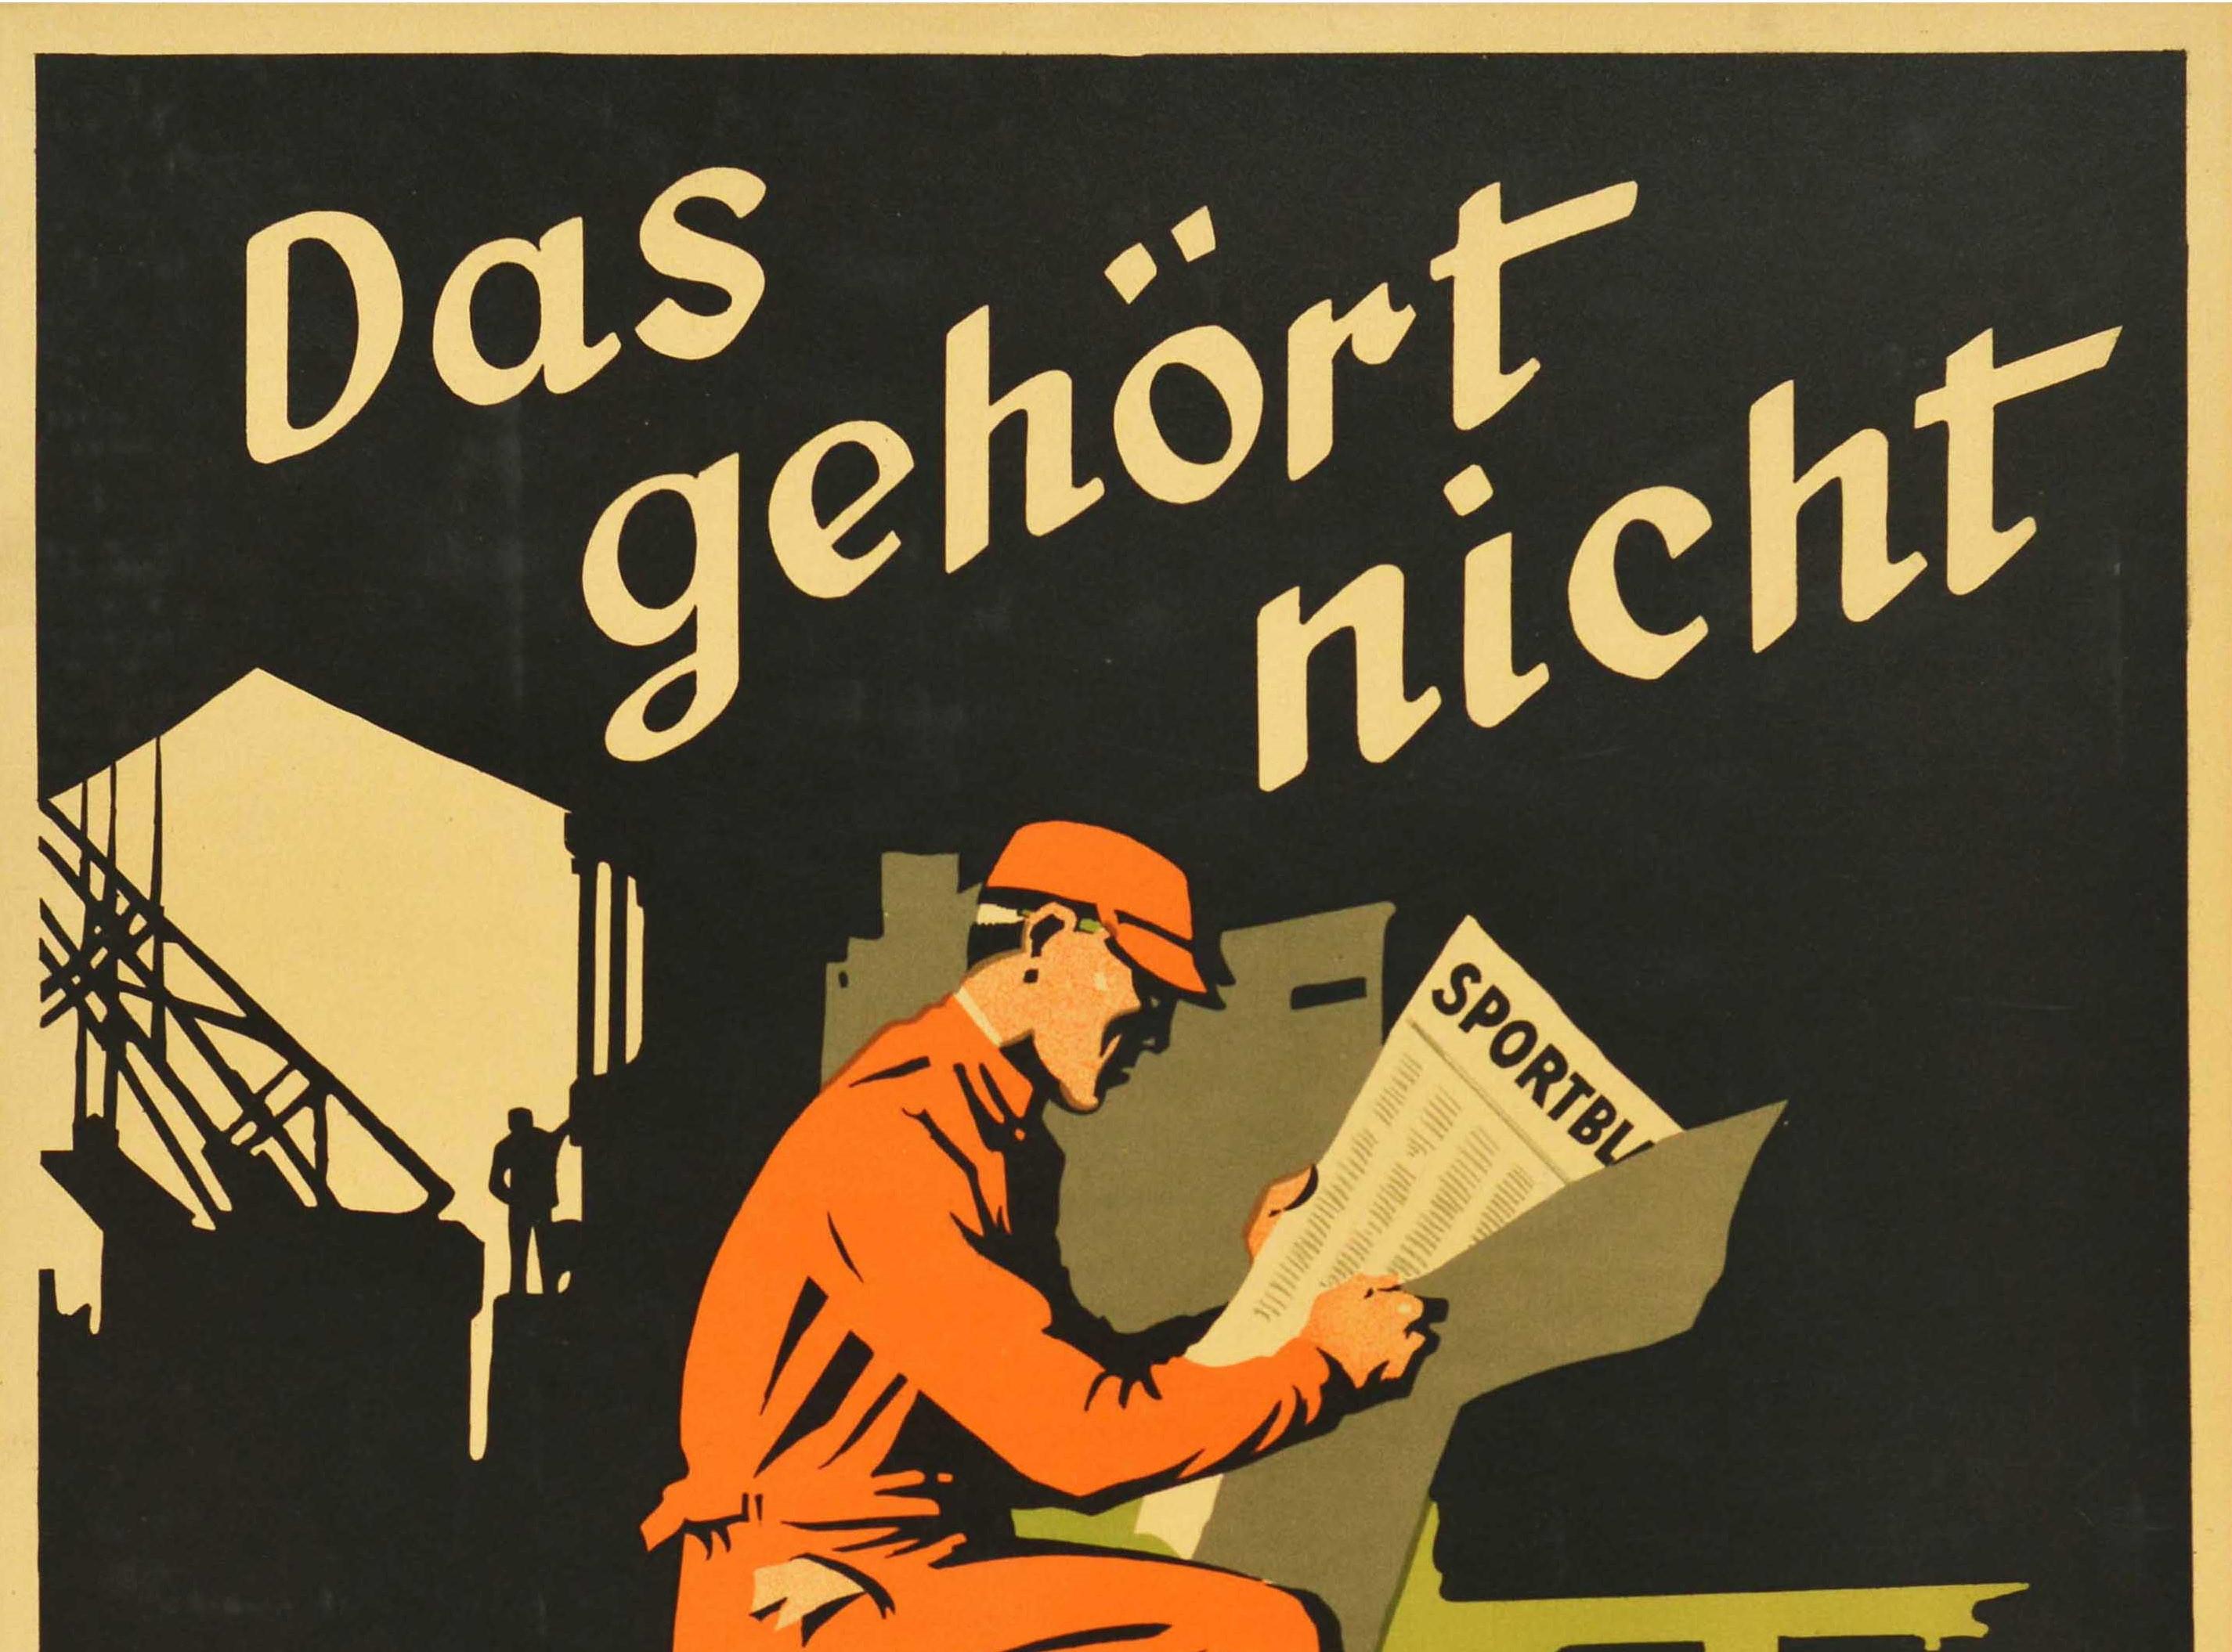 Affiche de motivation sur le lieu de travail, d'origine allemande, publiée par la société Parker-Holladay à Berlin. Elle présente une illustration d'un ouvrier lisant les pages sportives d'un journal dans une usine industrielle, avec la citation sur